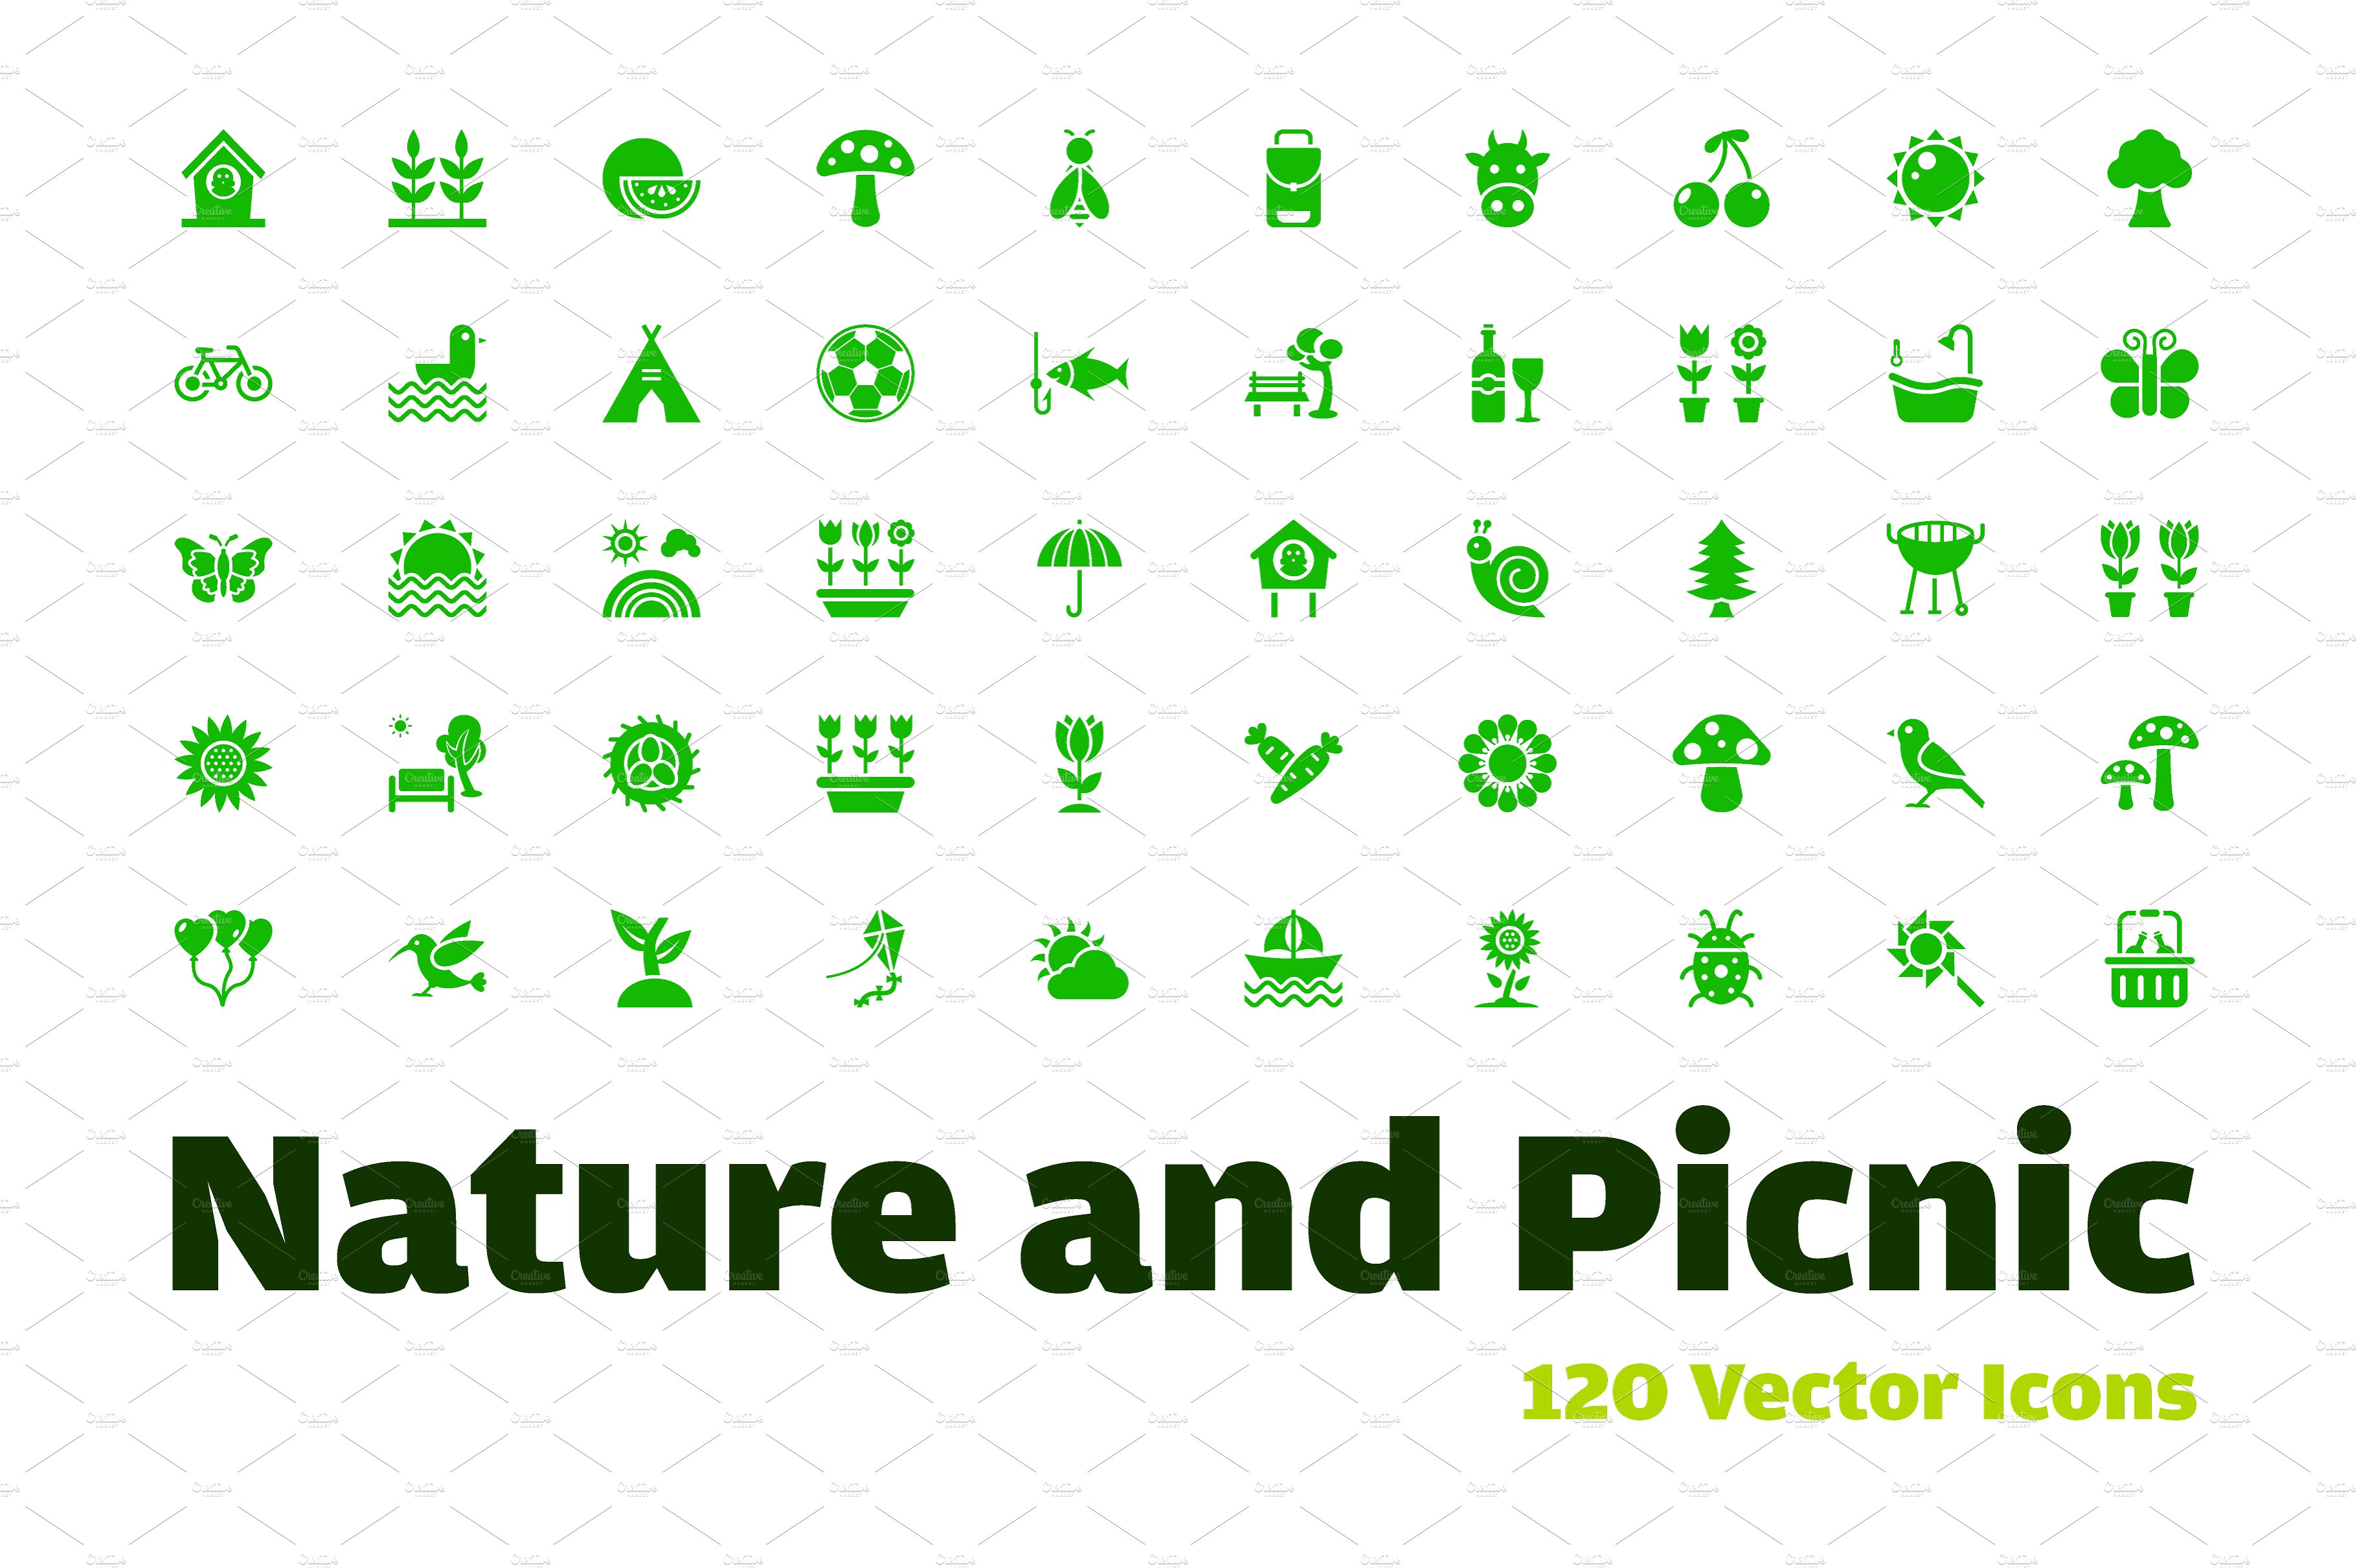 大自然和野餐矢量图标下载 Nature and Picnic